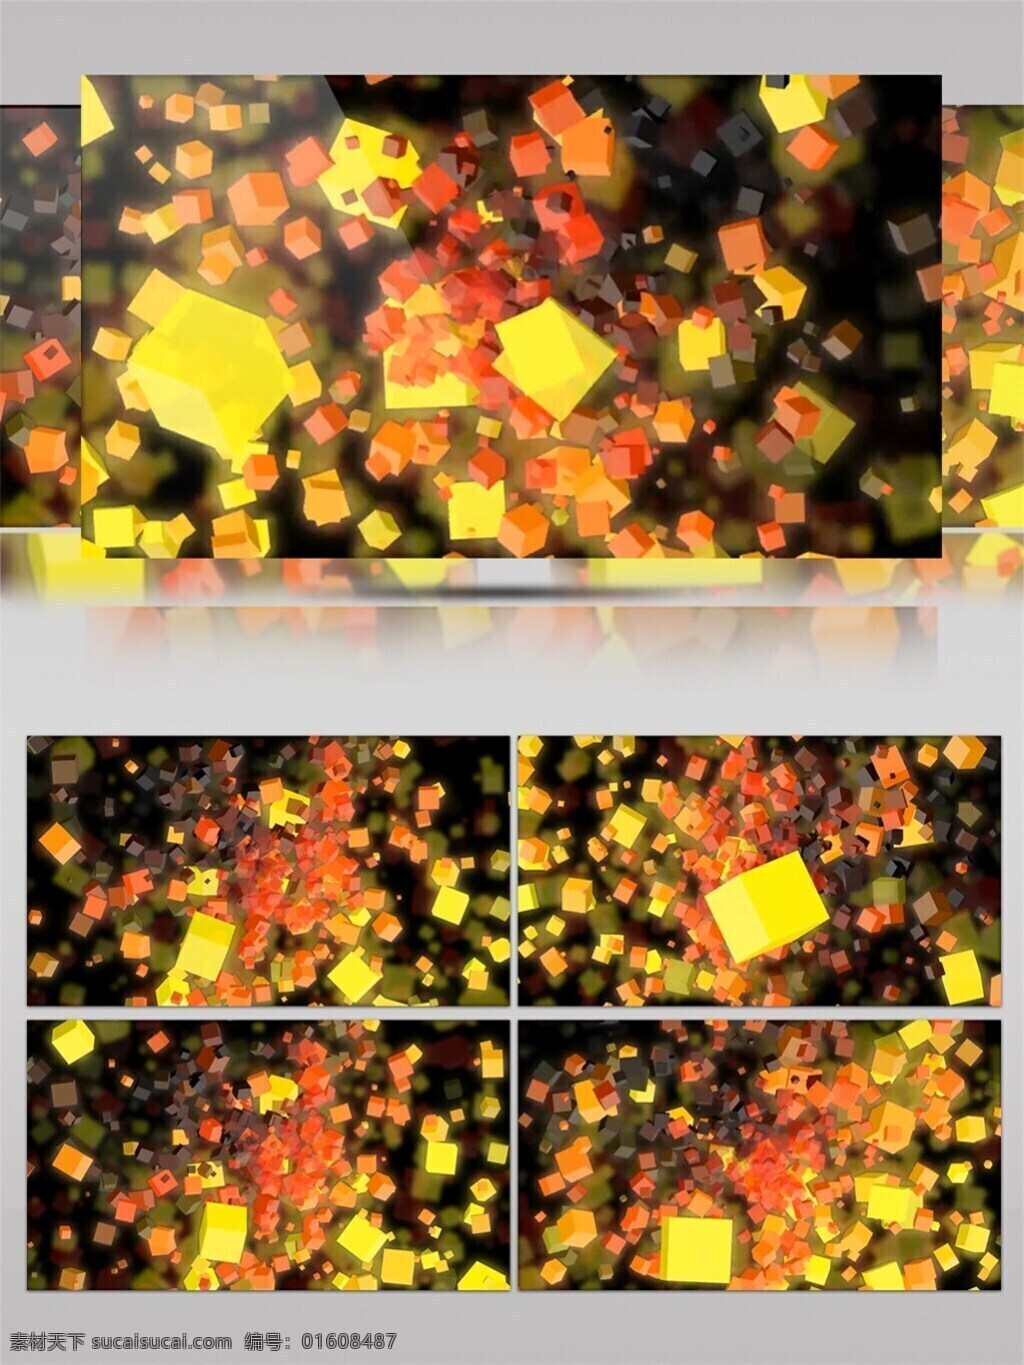 黄色 叶子 高清 视频 炫酷化疗 黄色叶子 枫叶 晚会表演 渲染灯光 华丽光转 vj灯光 vj光线 3d视频素材 特效视频素材